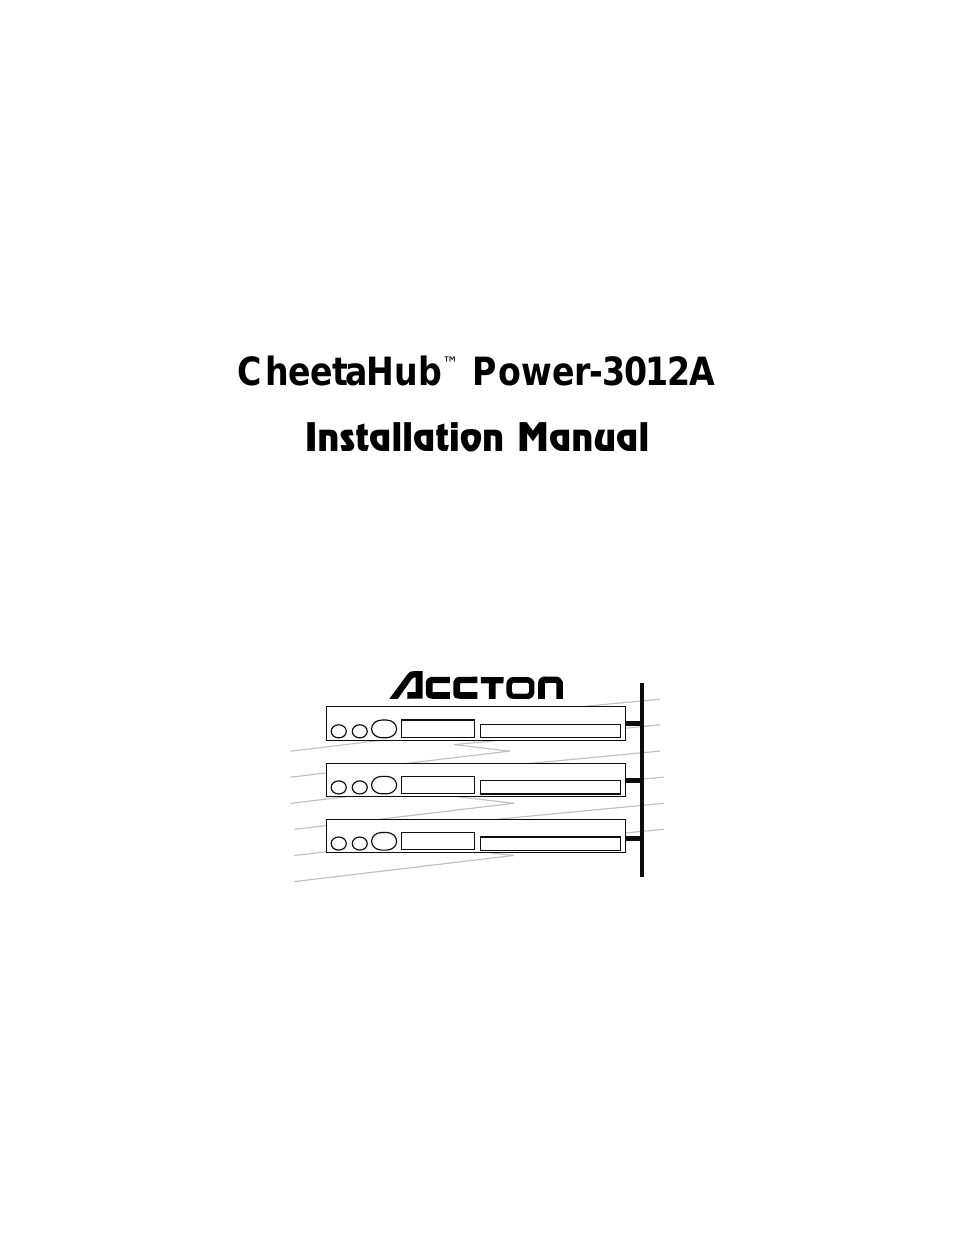 CHEETAHUB POWER-3012A